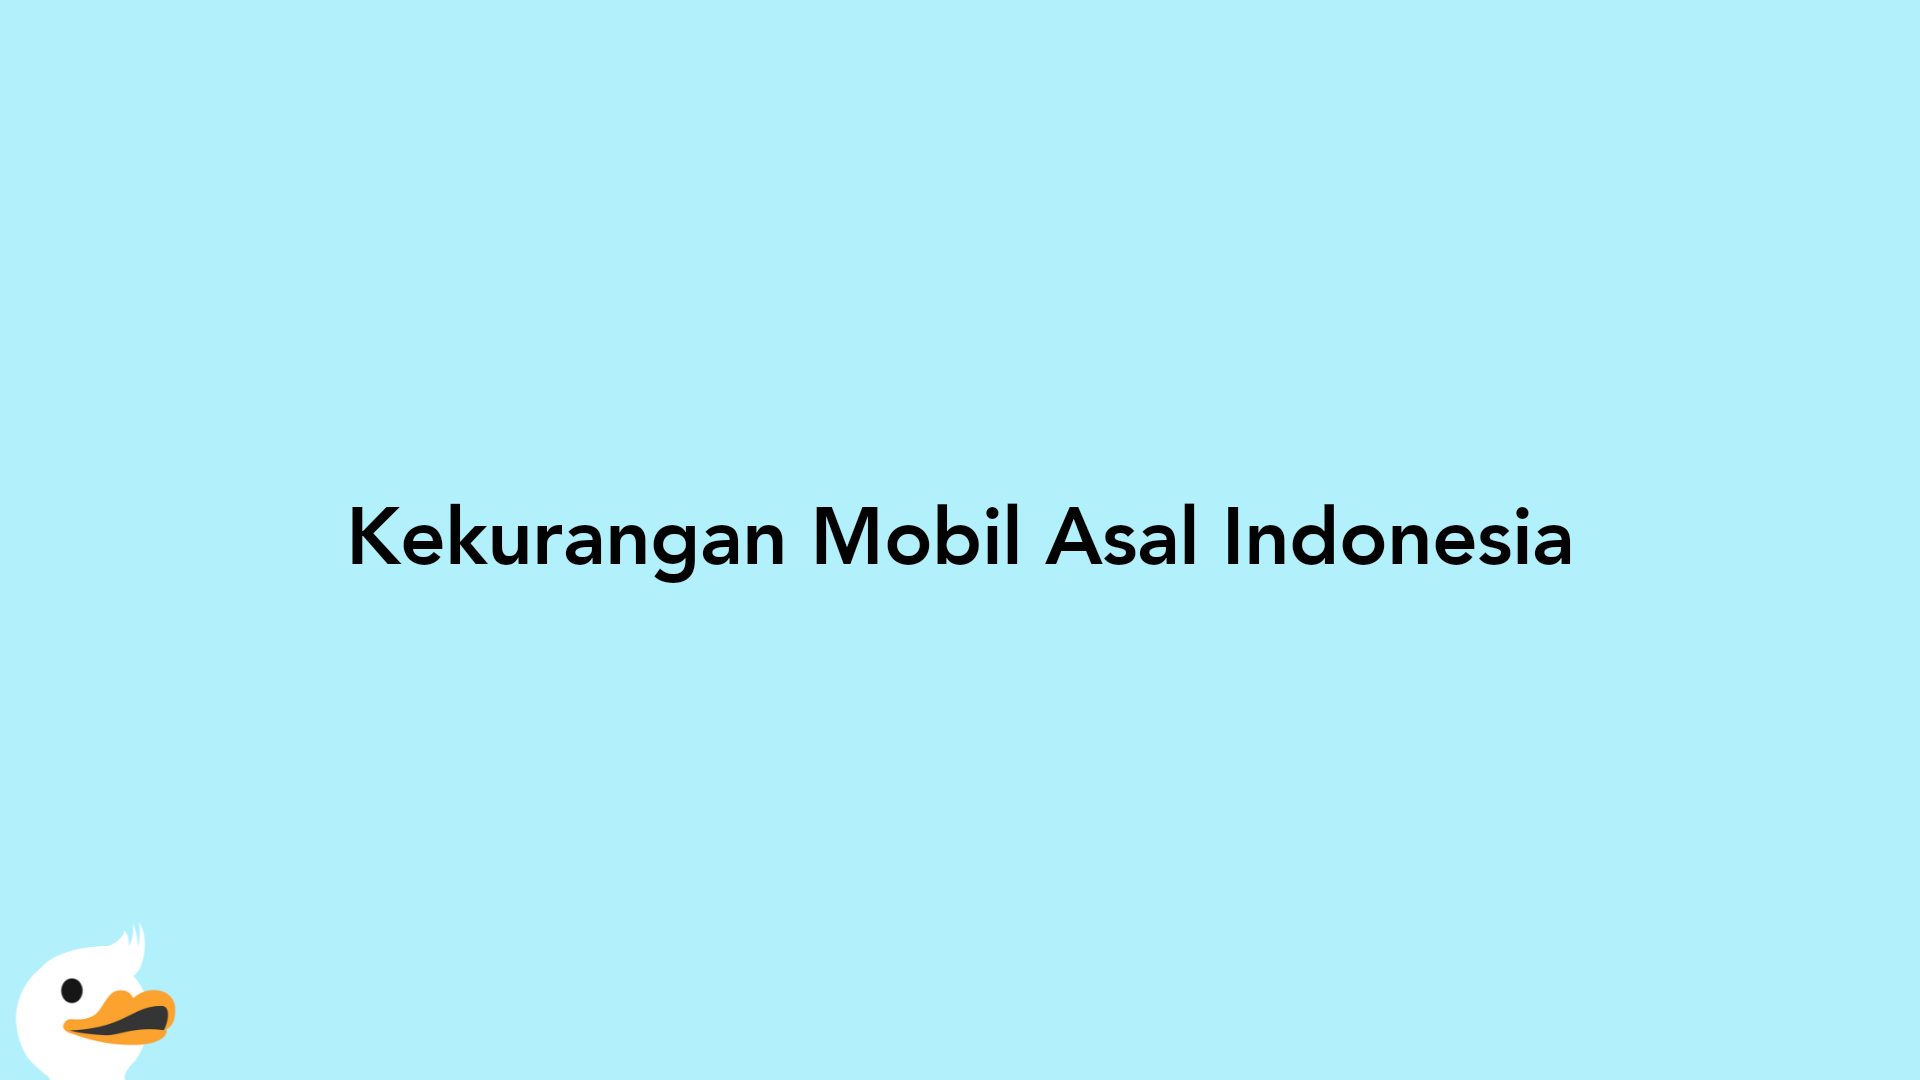 Kekurangan Mobil Asal Indonesia